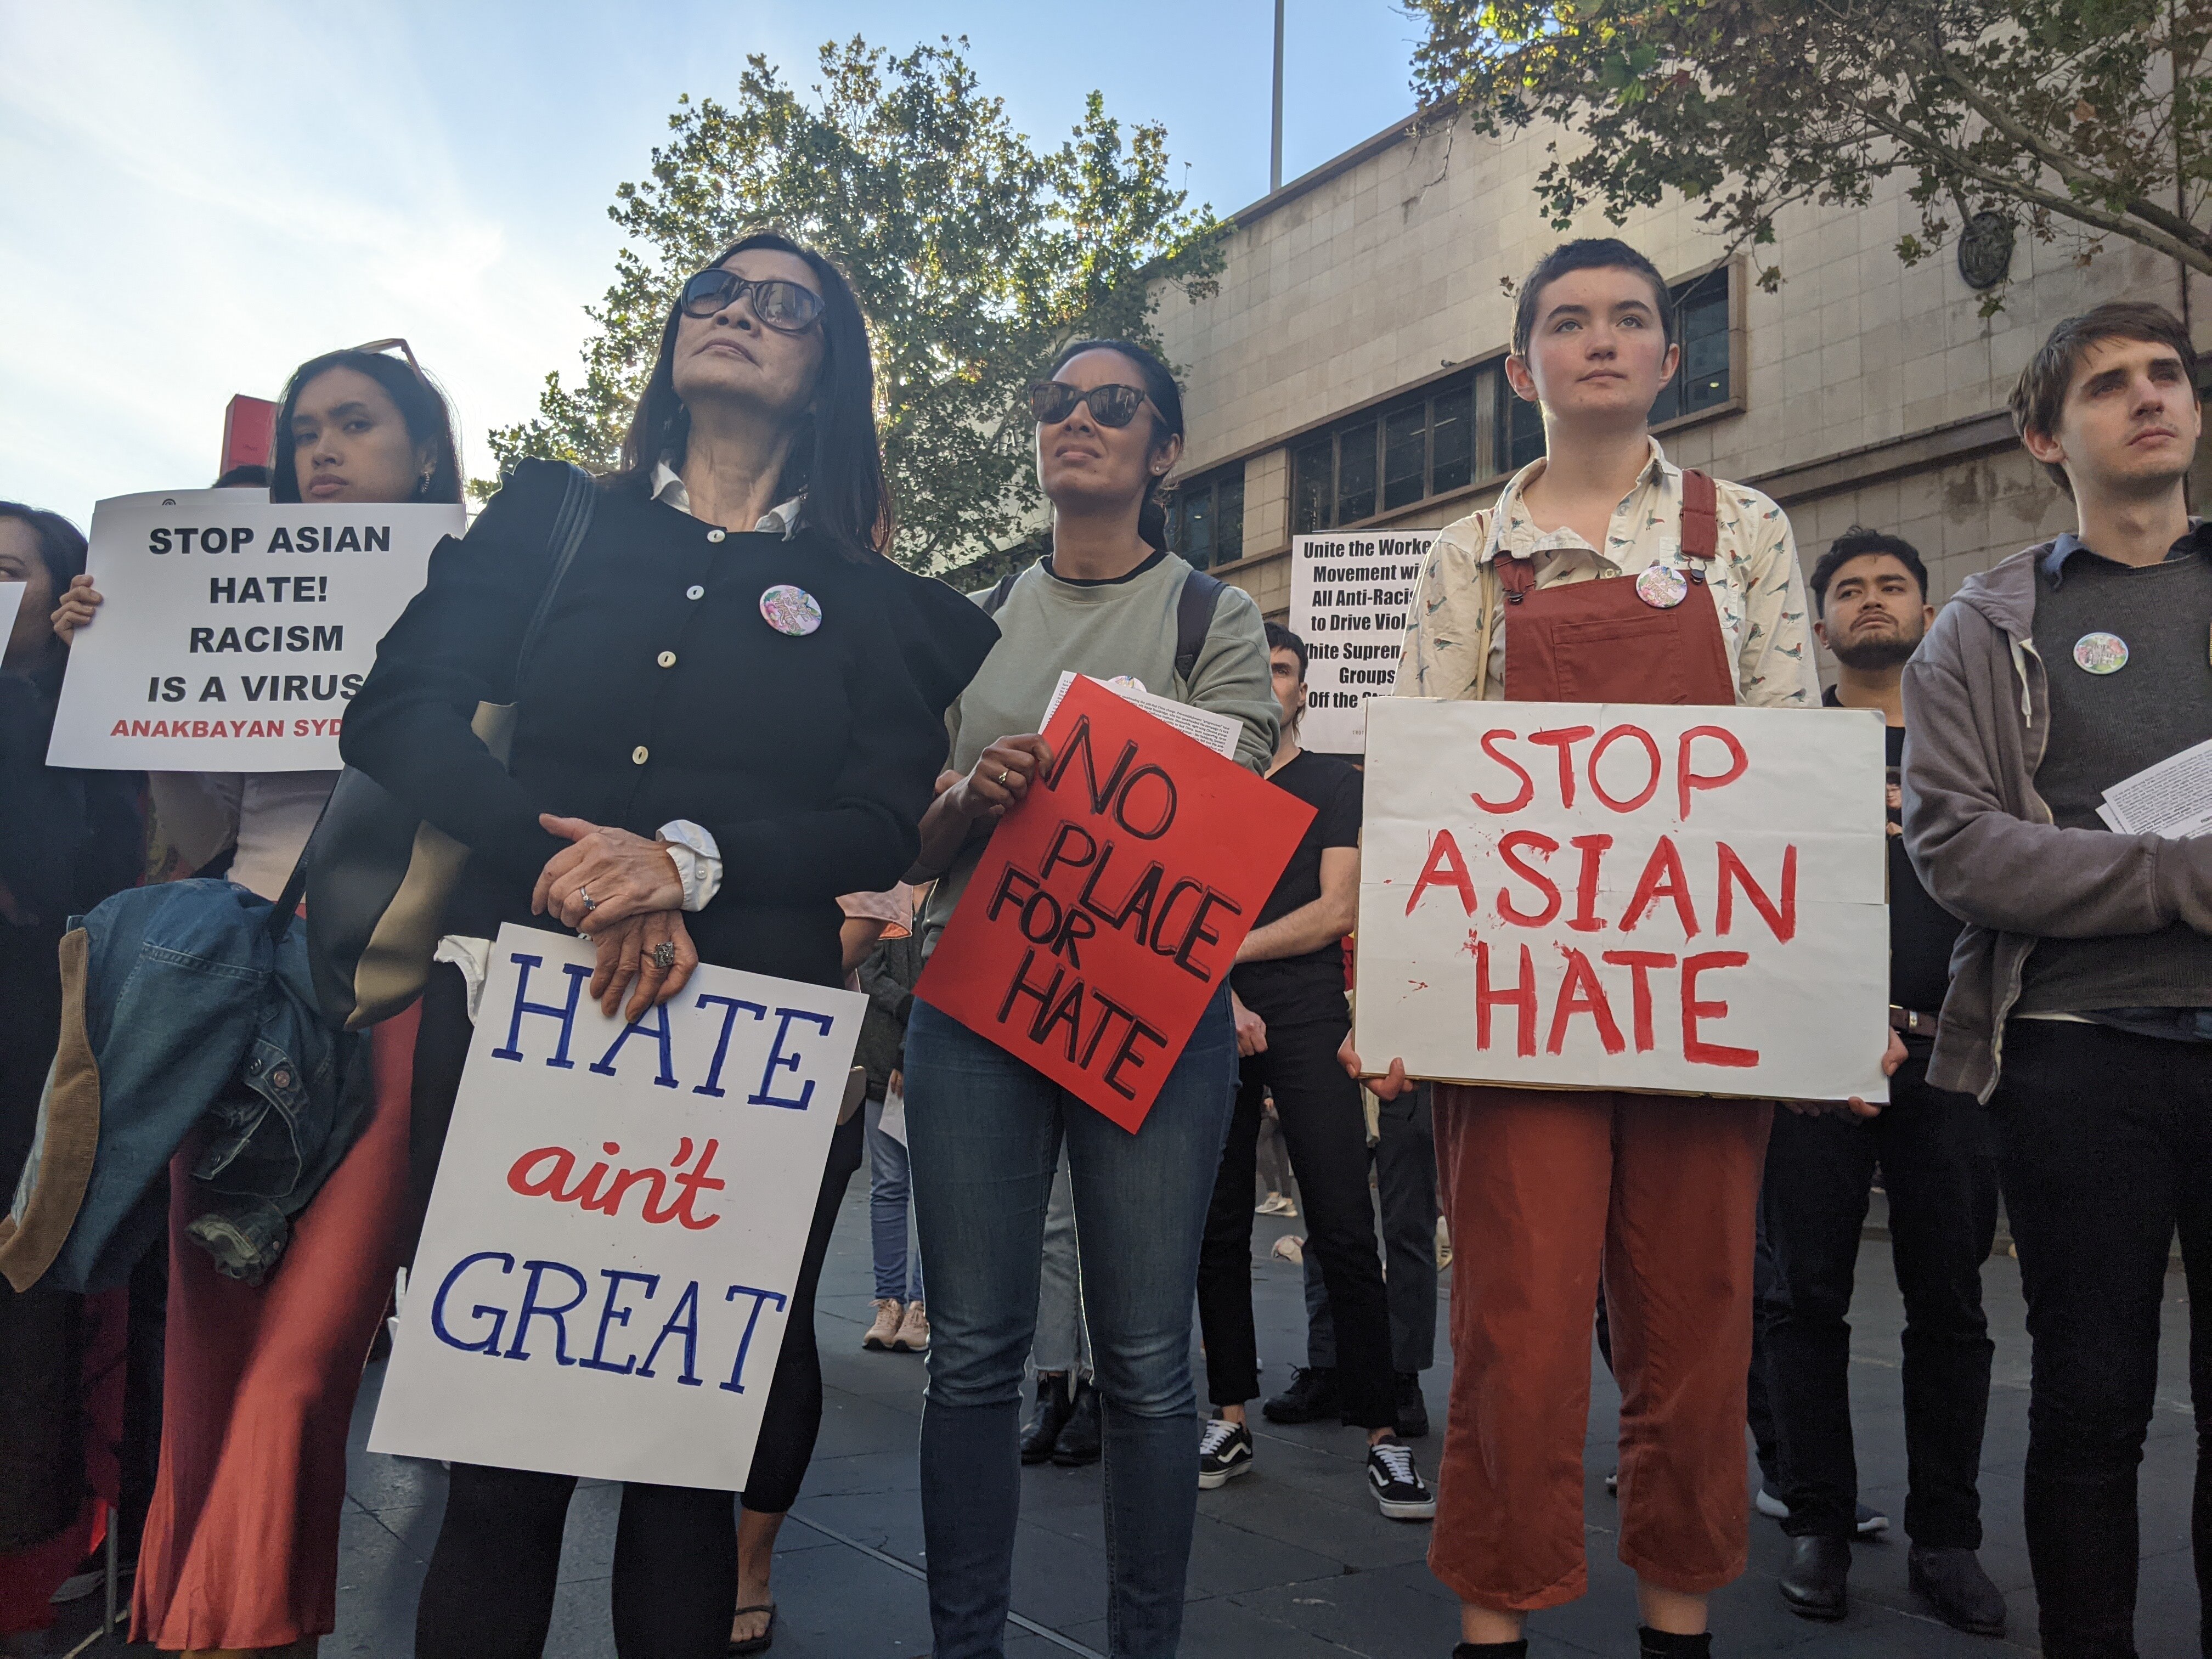 白人中学生Harriet Ryder参与“停止仇恨亚裔”集会